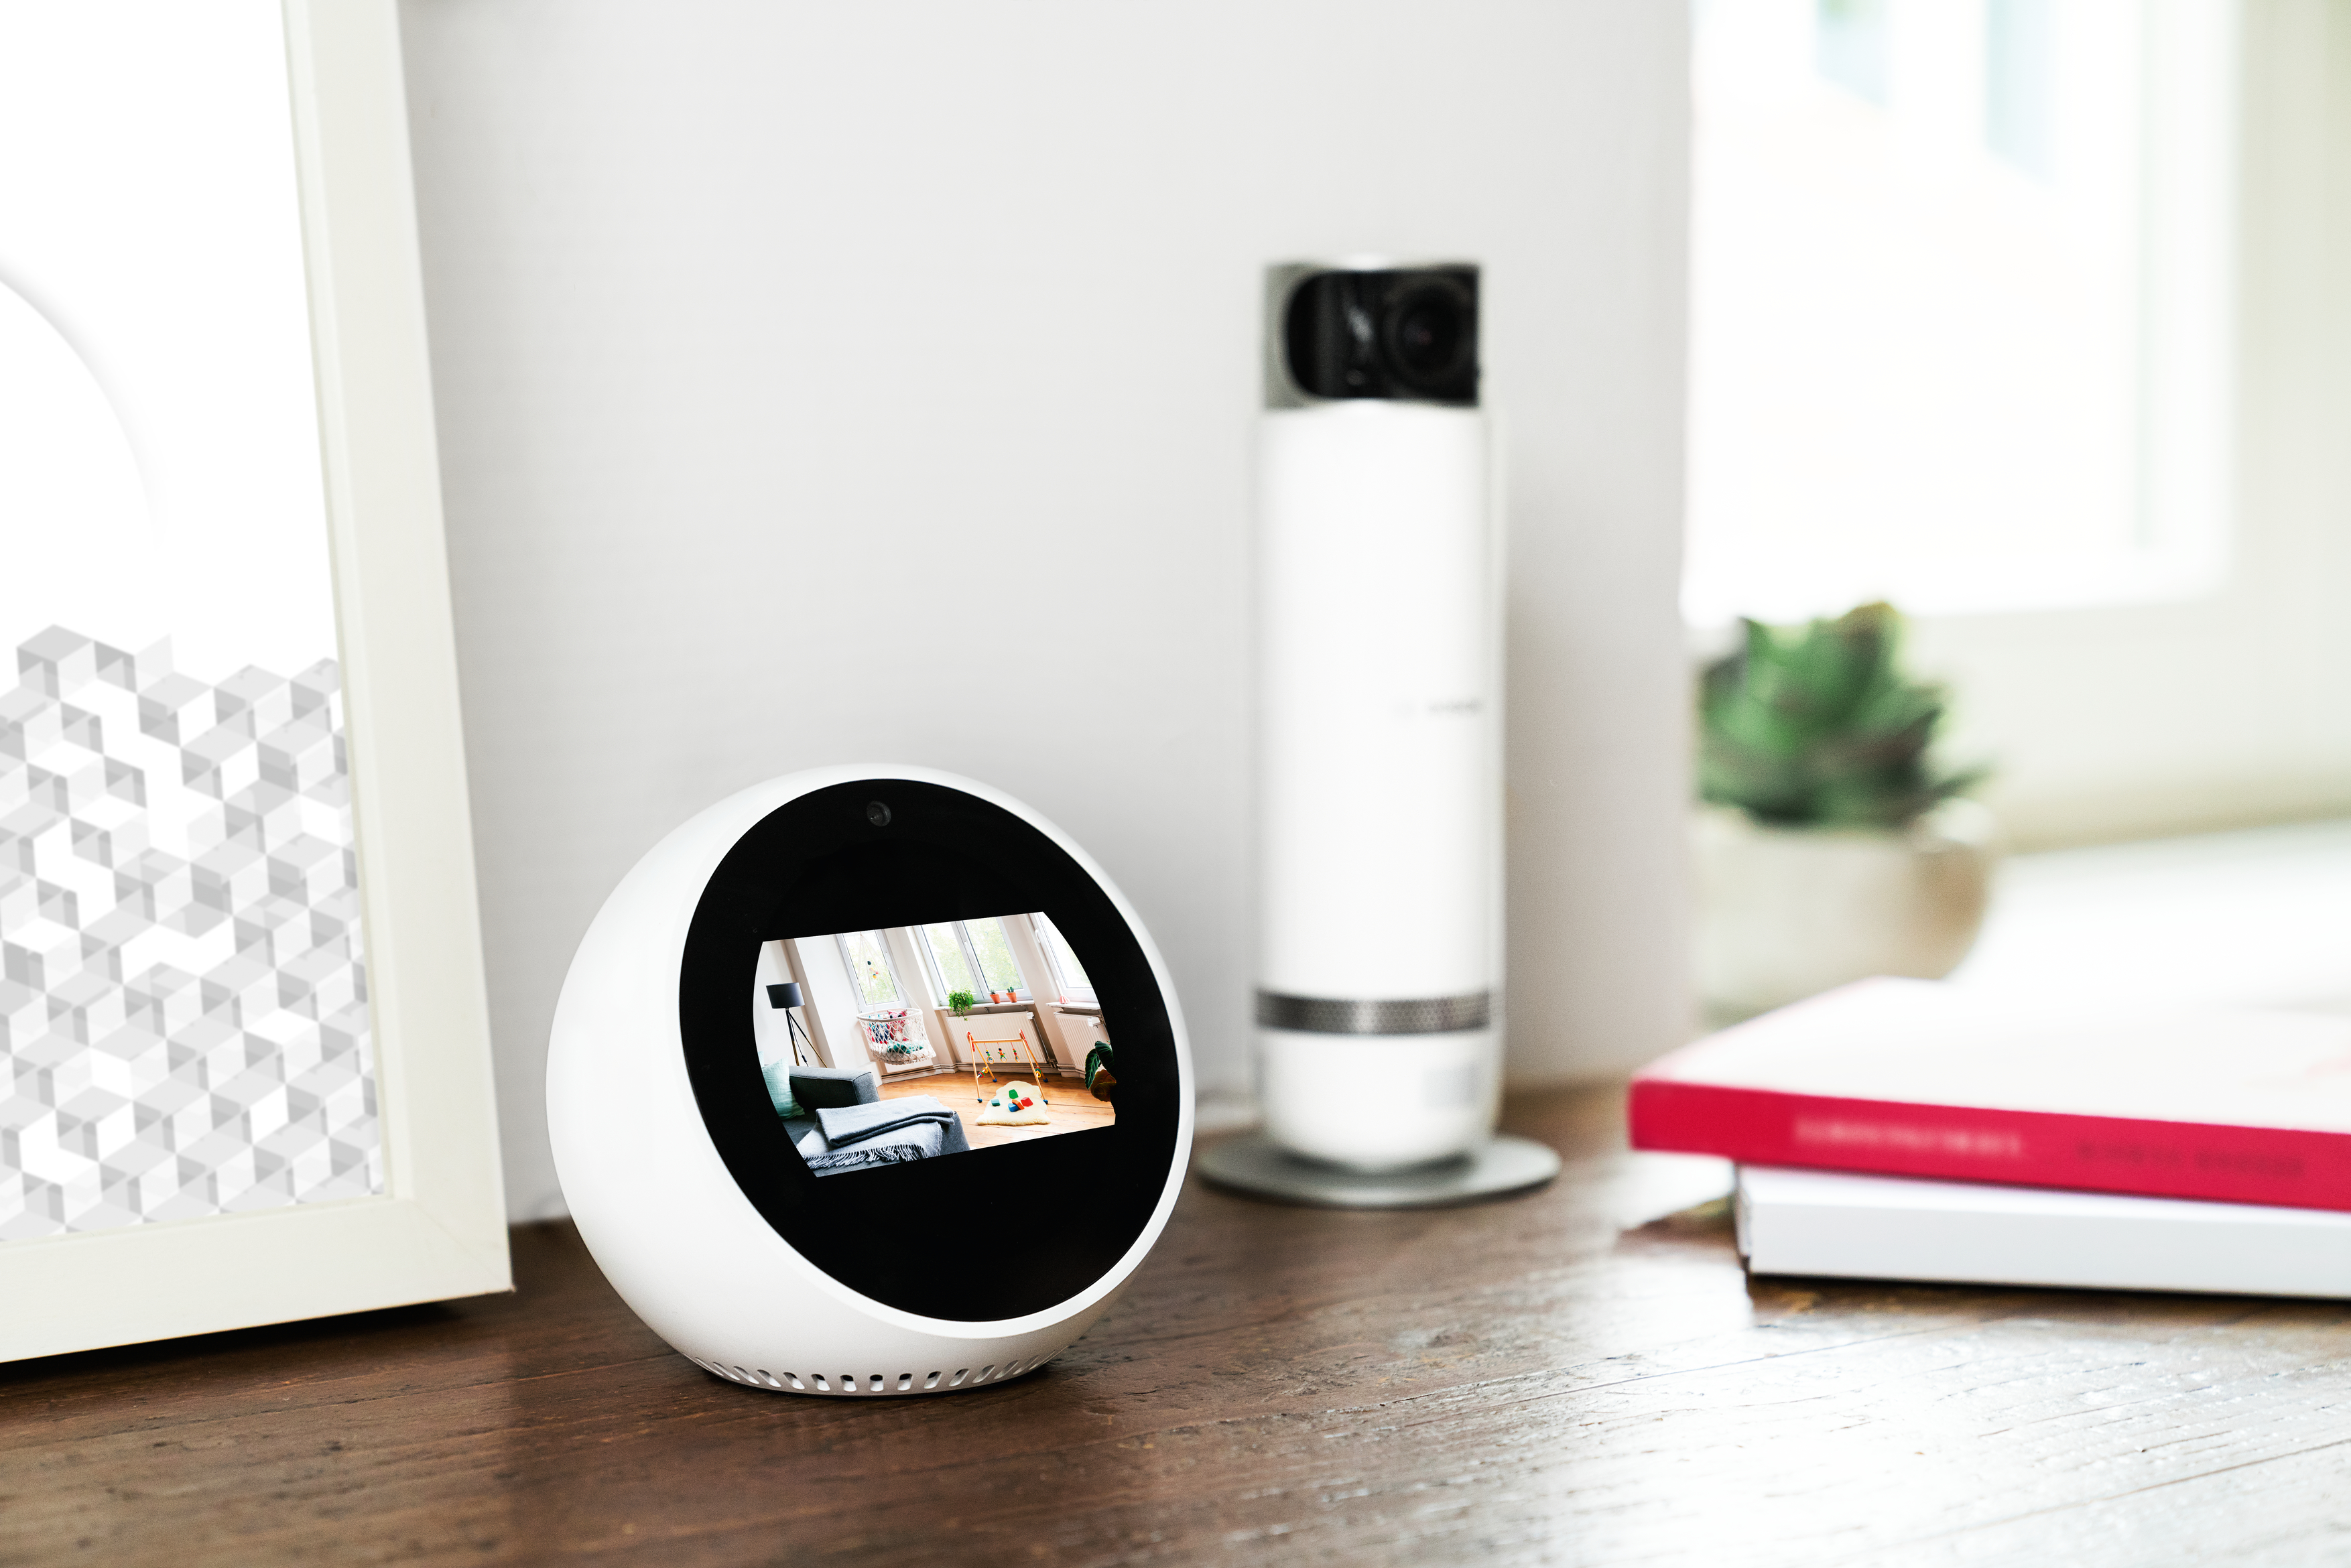 Bosch Smart Home Voice Control via Amazon Alexa